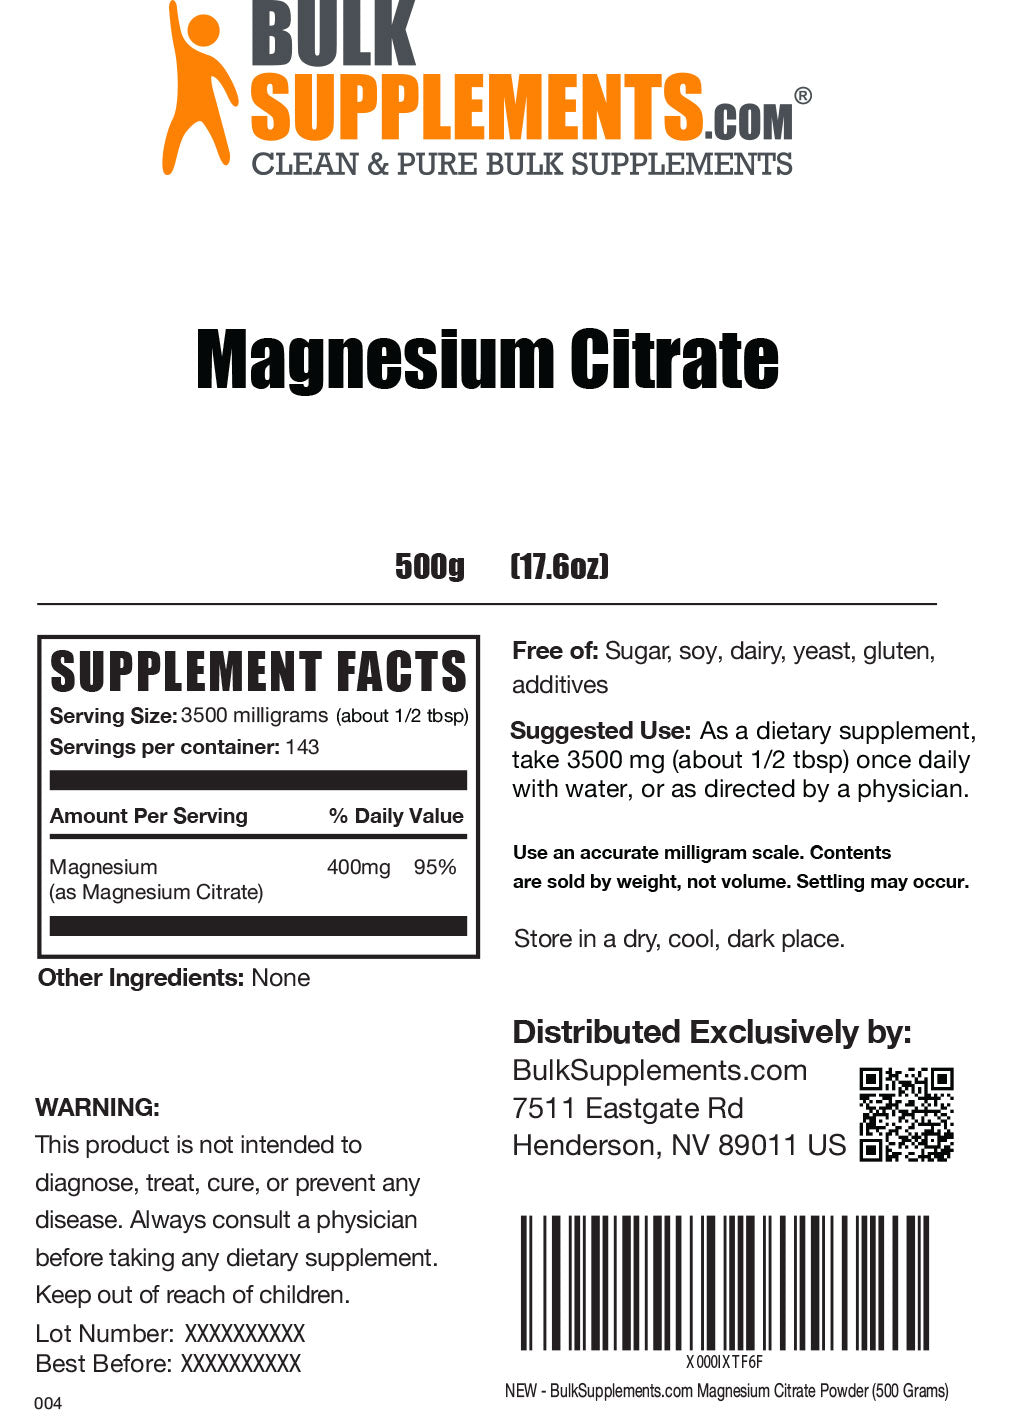 Magnesium Citrate Powder Label 500g